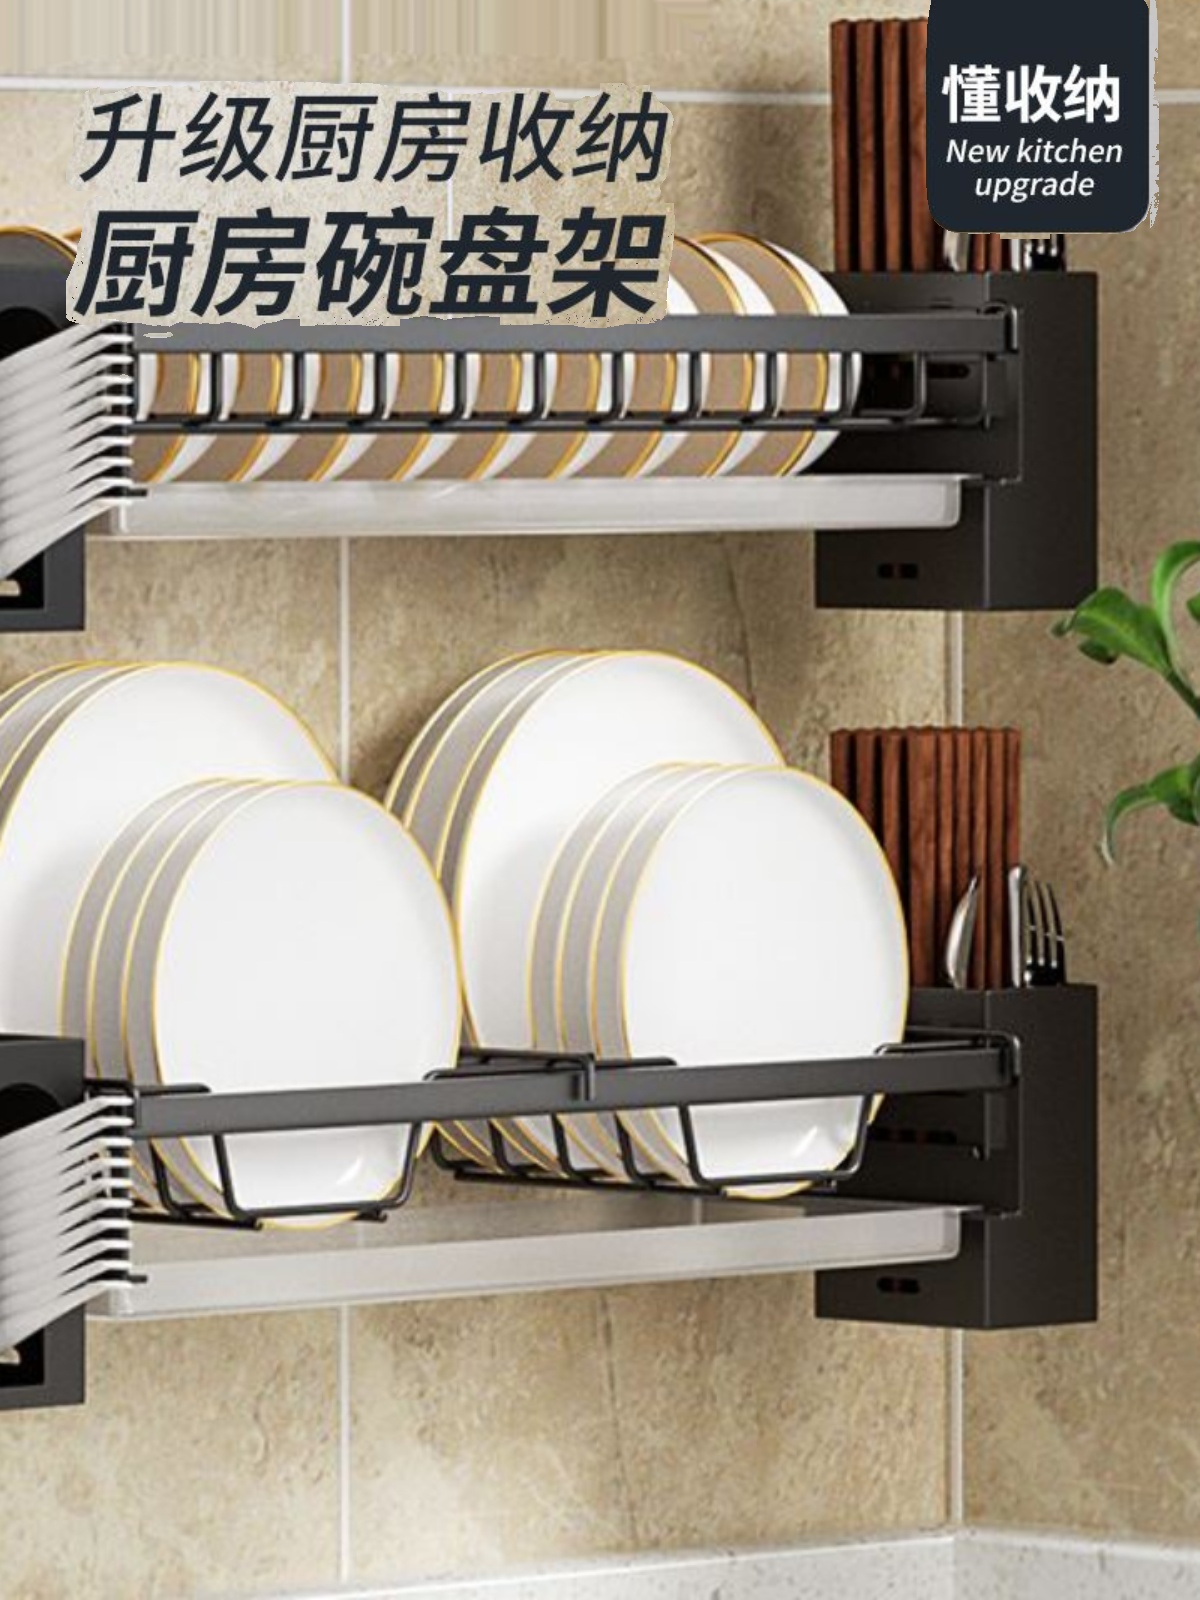 廚房神器必備壁掛瀝水碗盤收納架免打孔設計多種款式任君挑選打造整潔廚房空間 (8.3折)